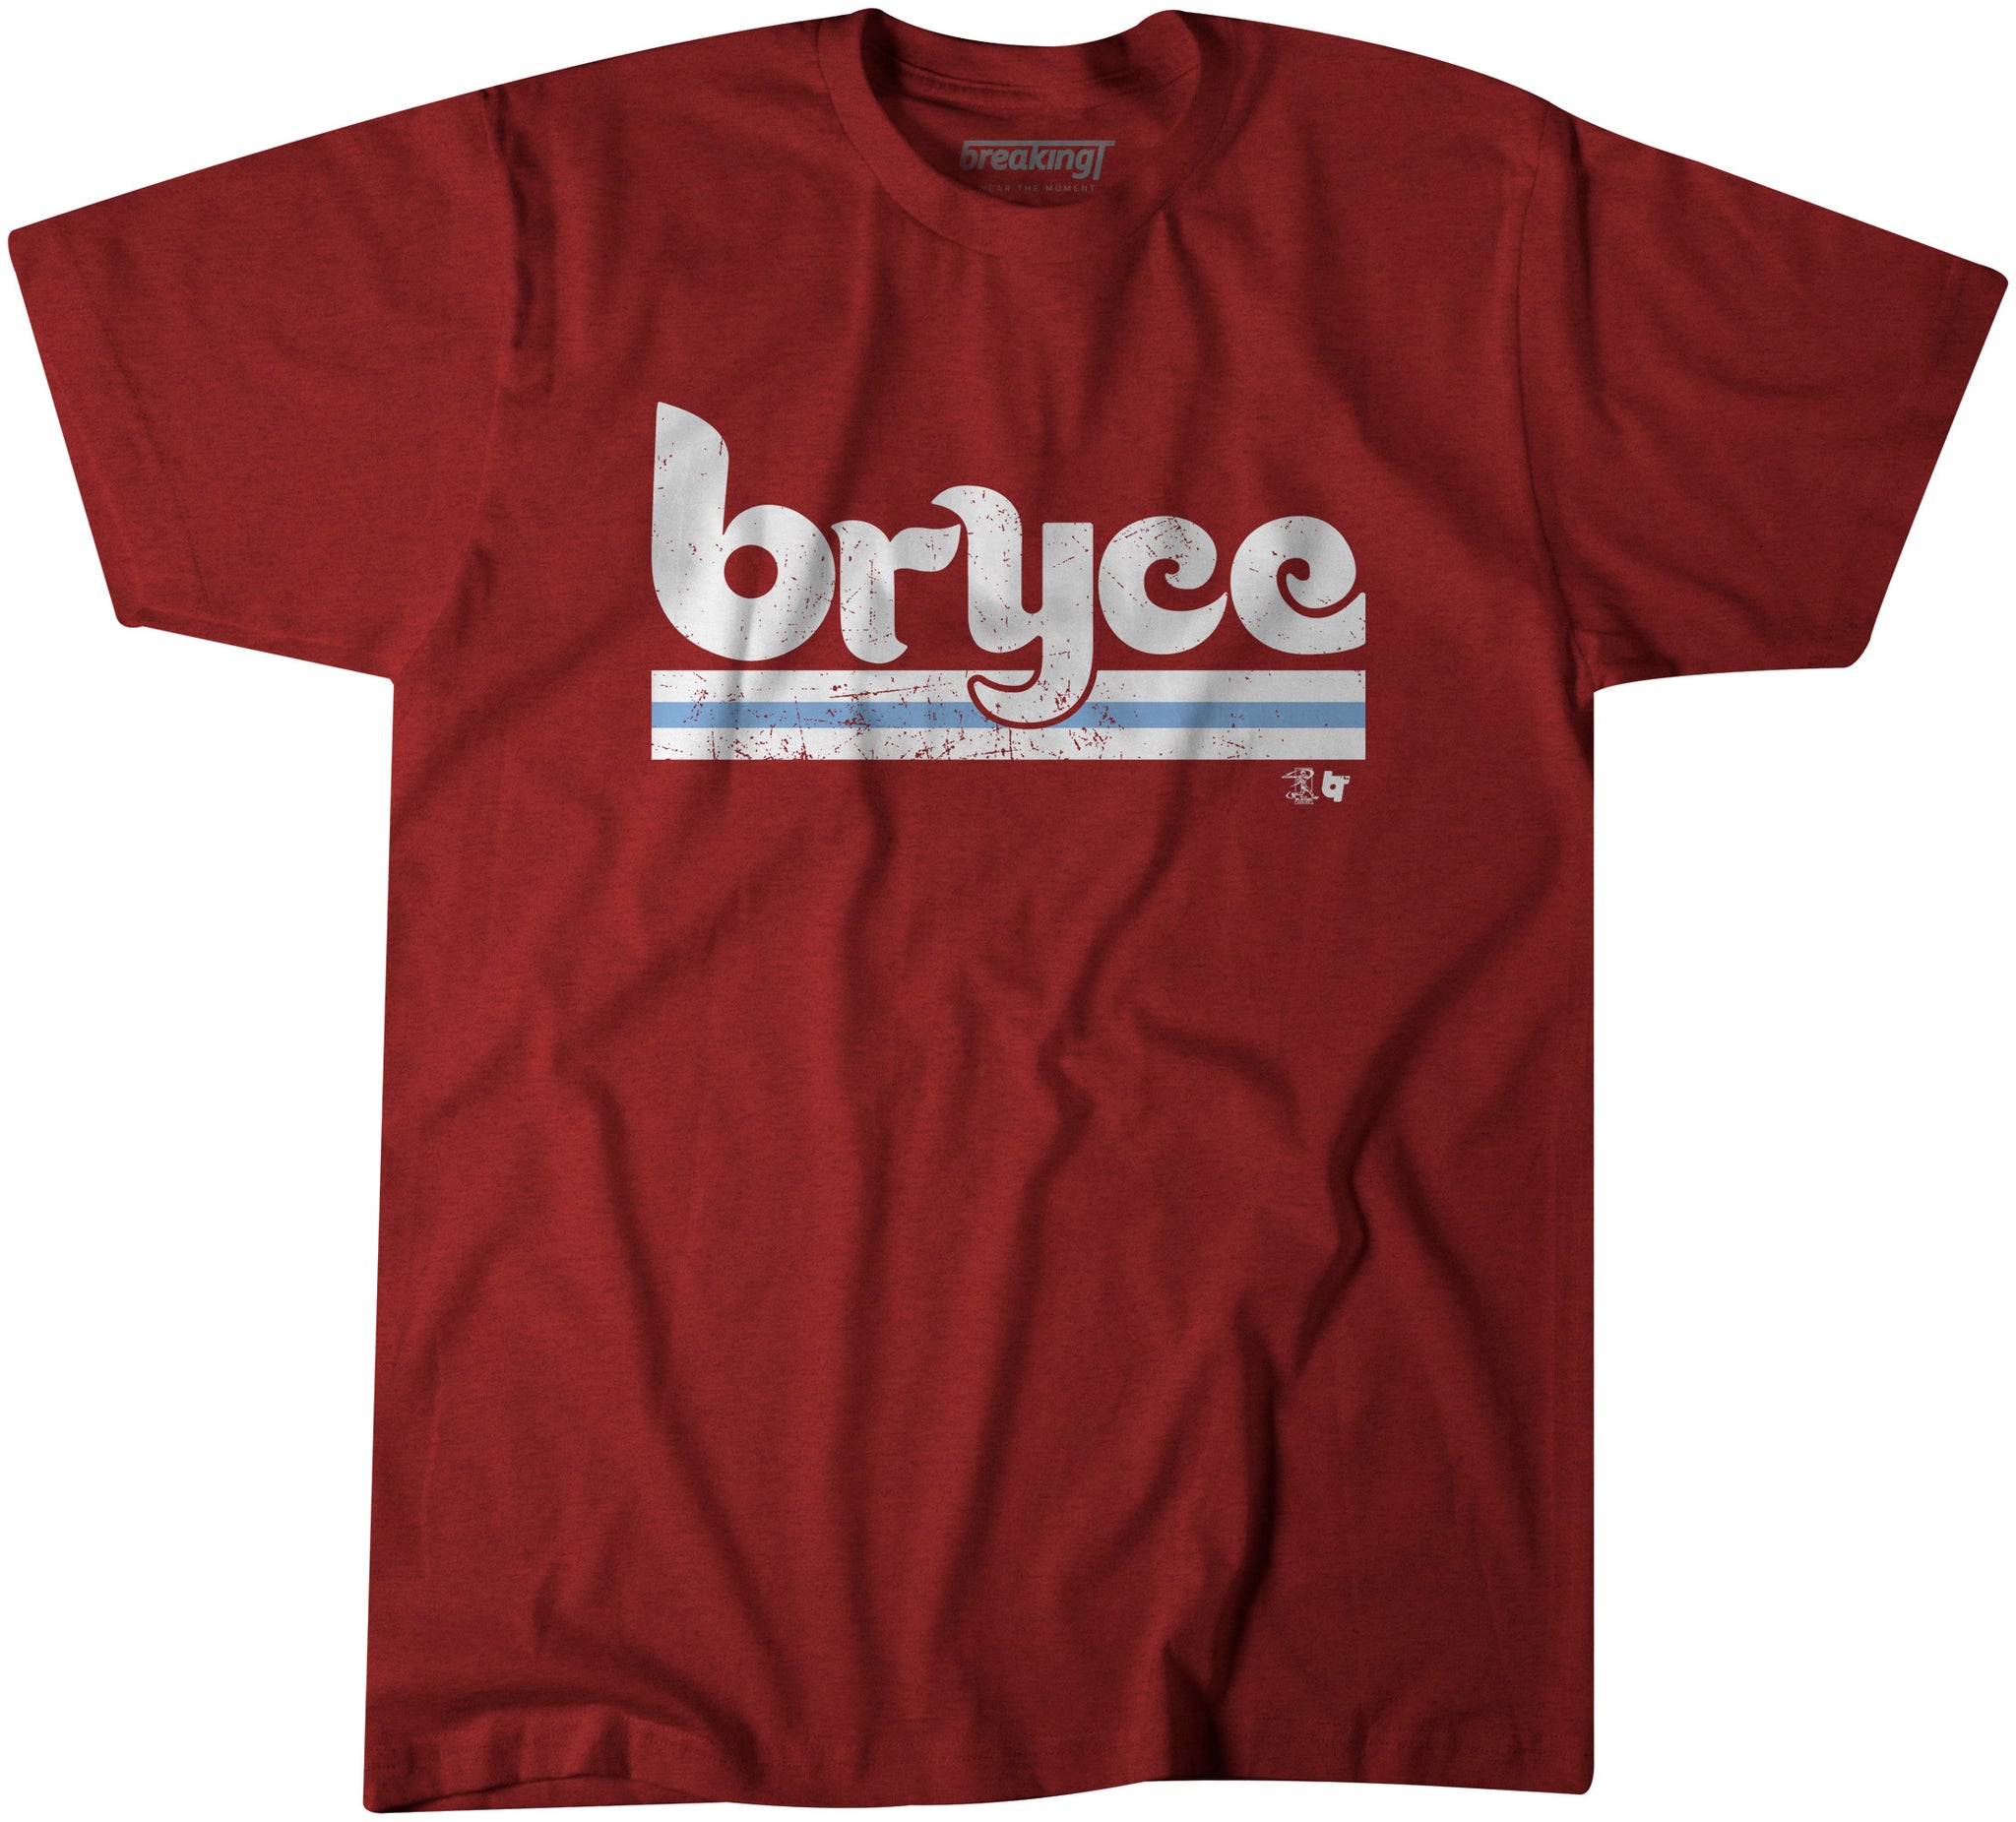 bryce harper shirts